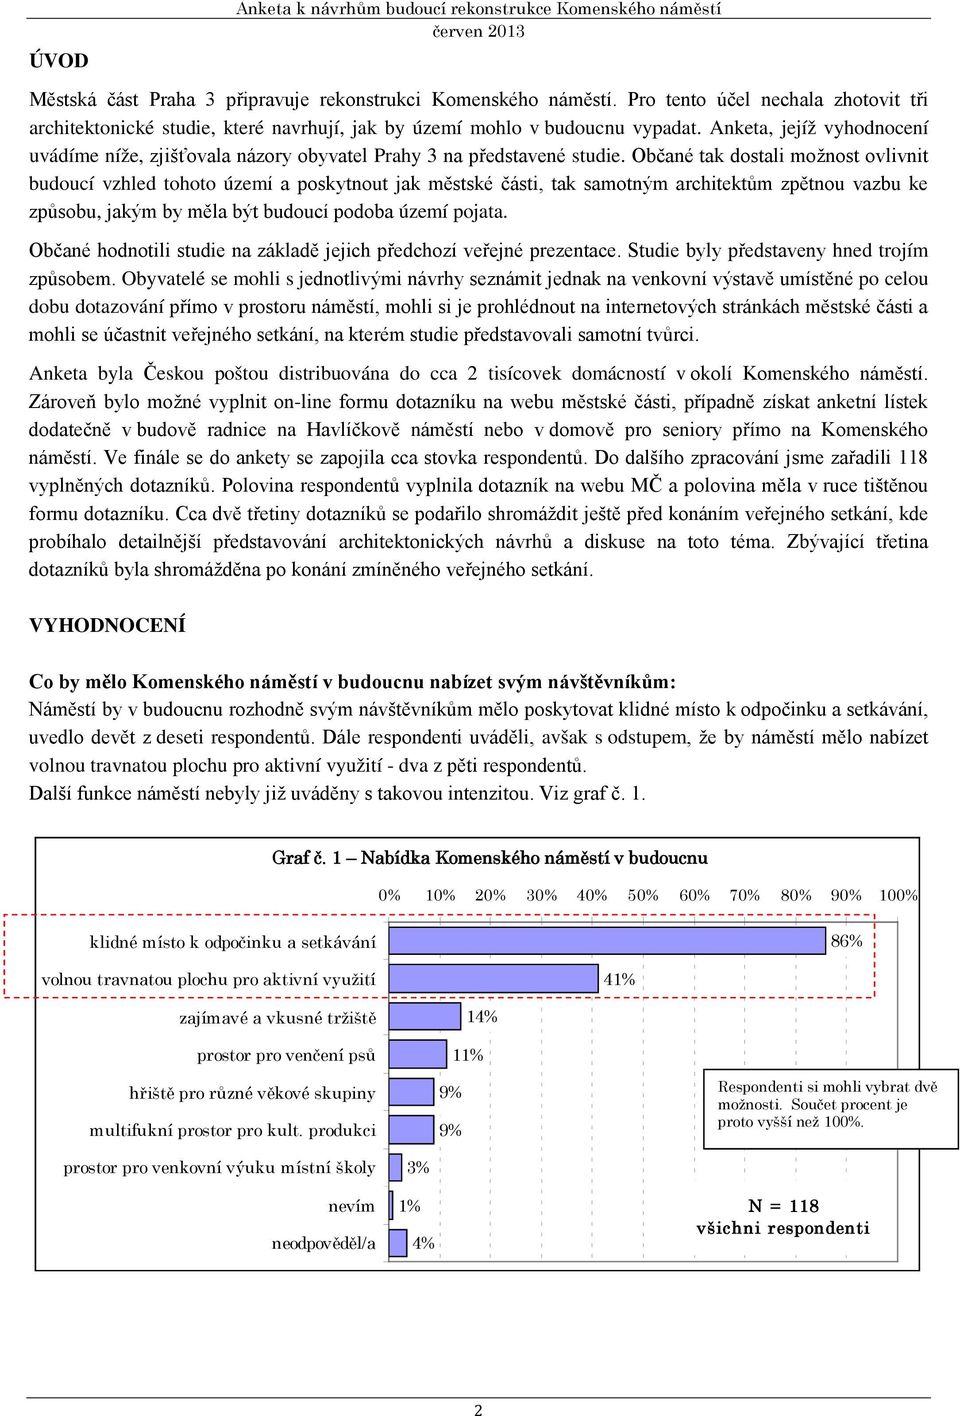 Anketa, jejíž vyhodnocení uvádíme níže, zjišťovala názory obyvatel Prahy 3 na představené studie.